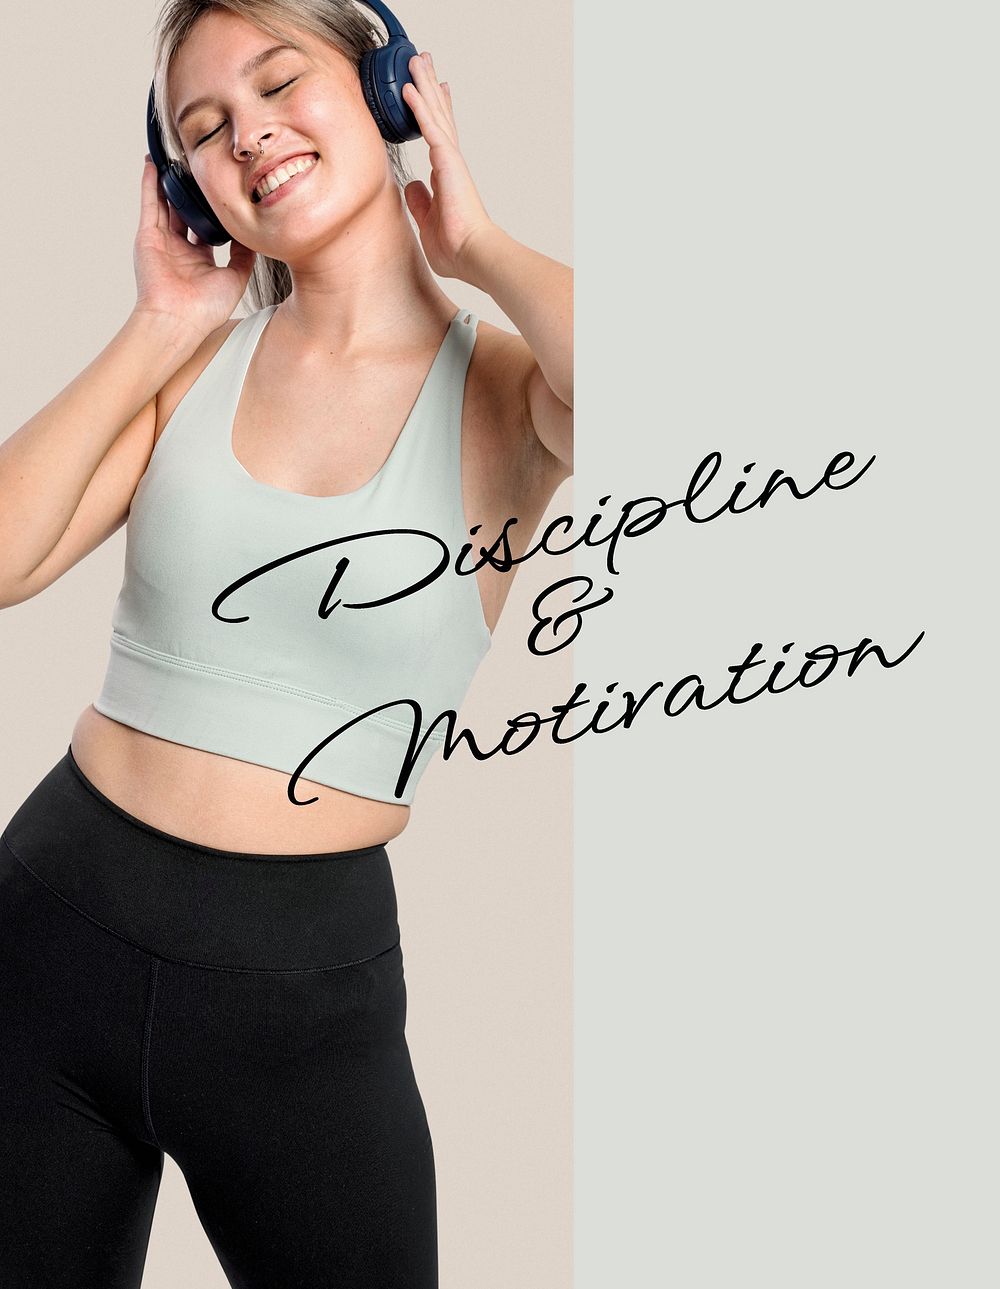 Discipline & motivation flyer template, sports, wellness photo psd